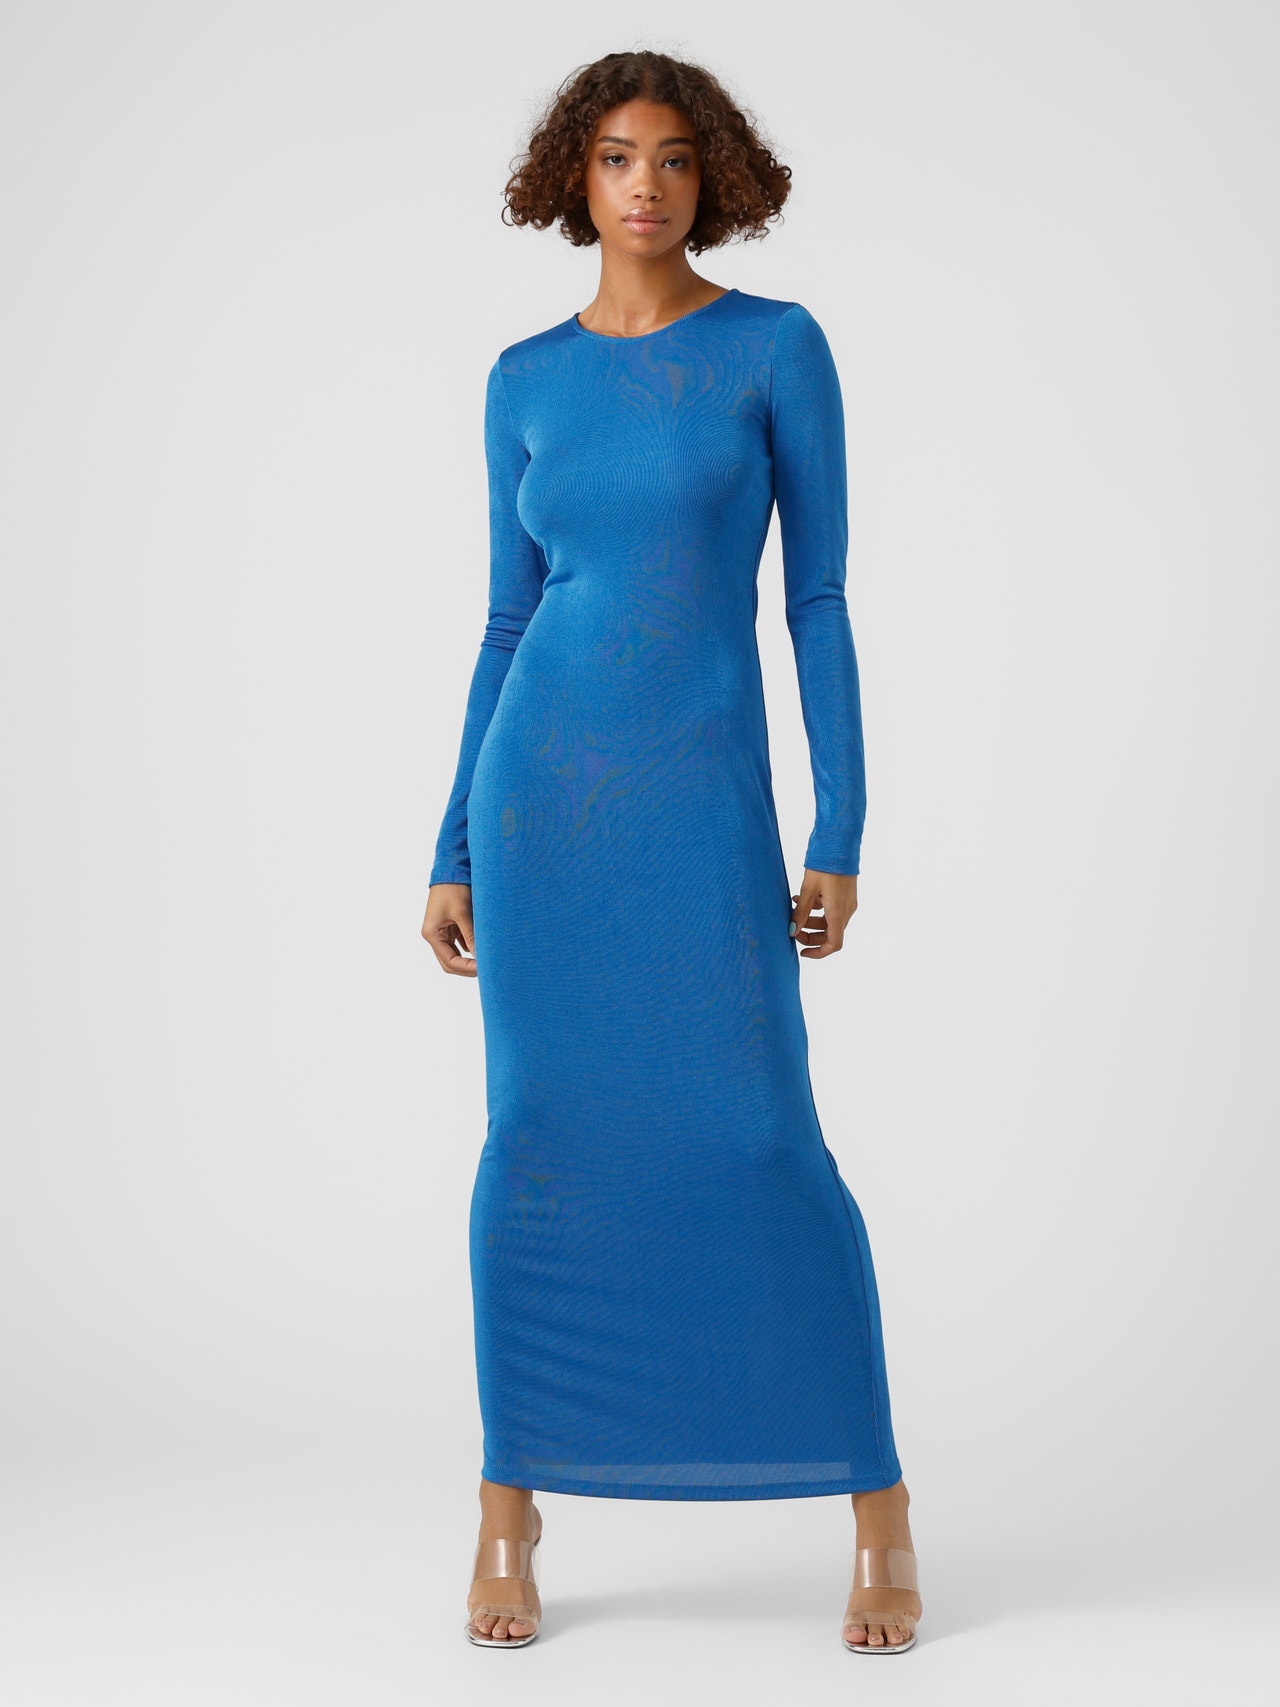 gerningsmanden filter støn Slim fit O-hals Almindelige ærmer Lang kjole med 60% rabat! | Vero Moda®